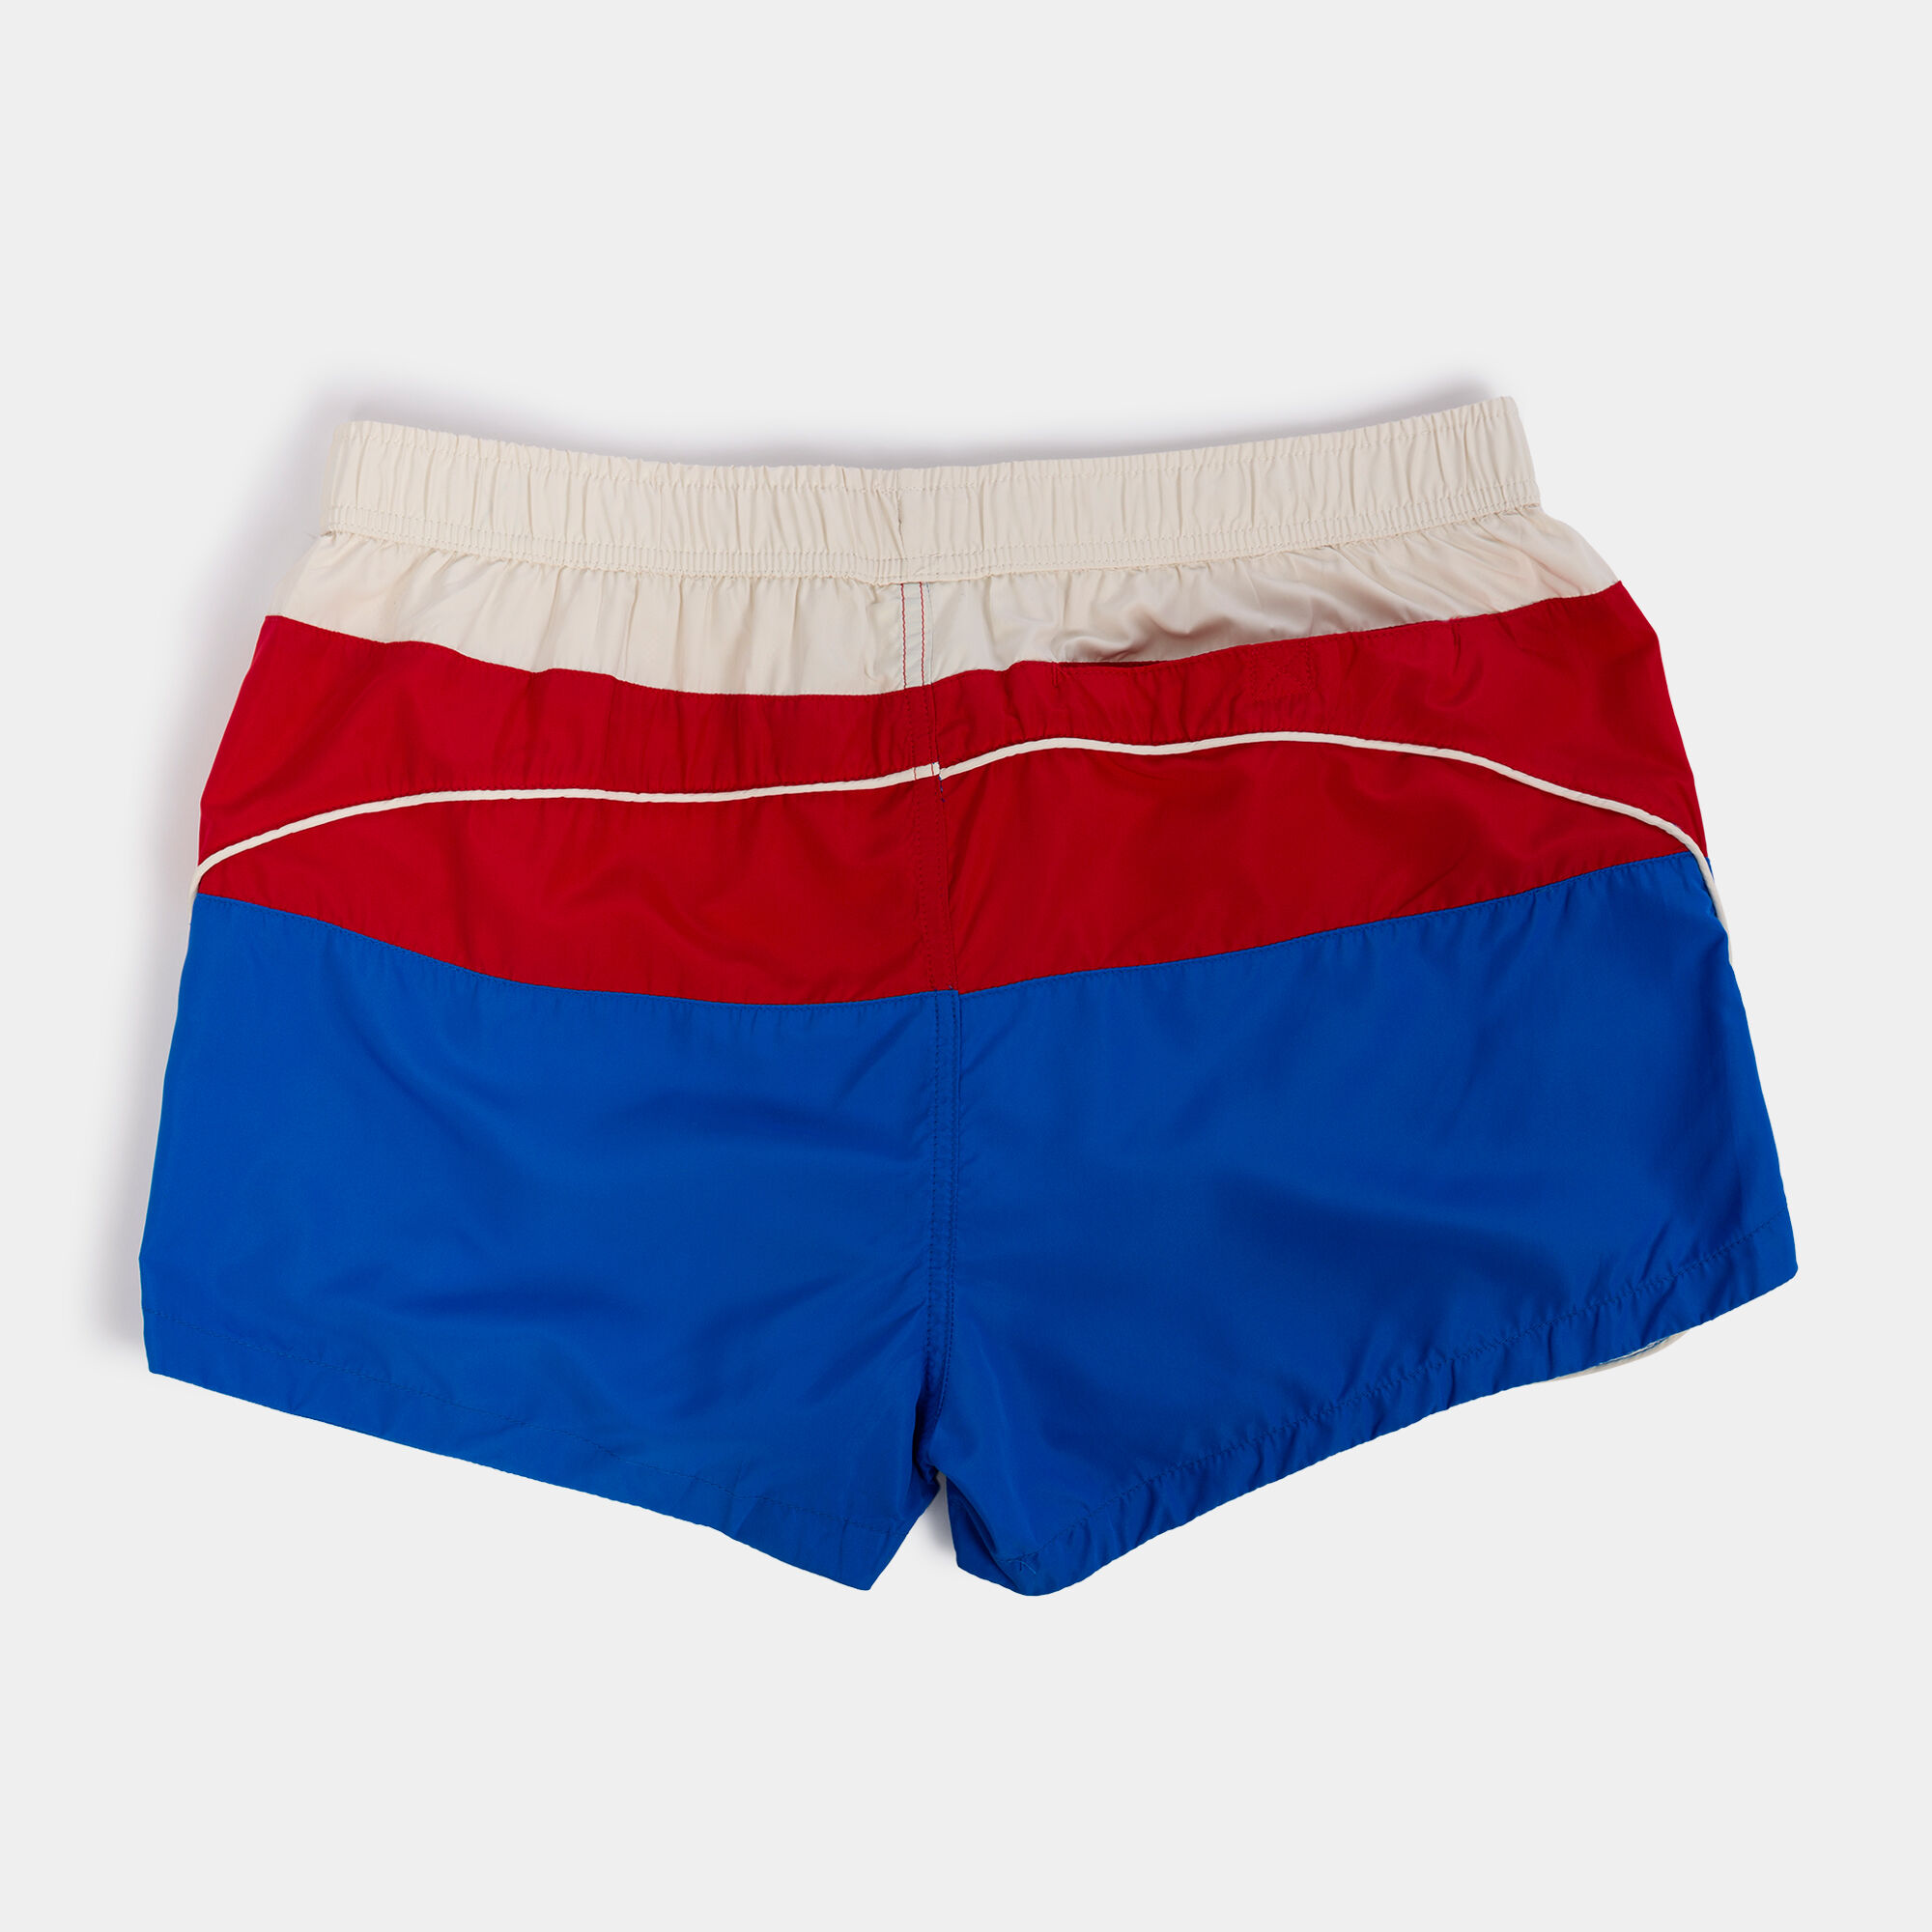 Swimming shorts man Paradis red royal blue